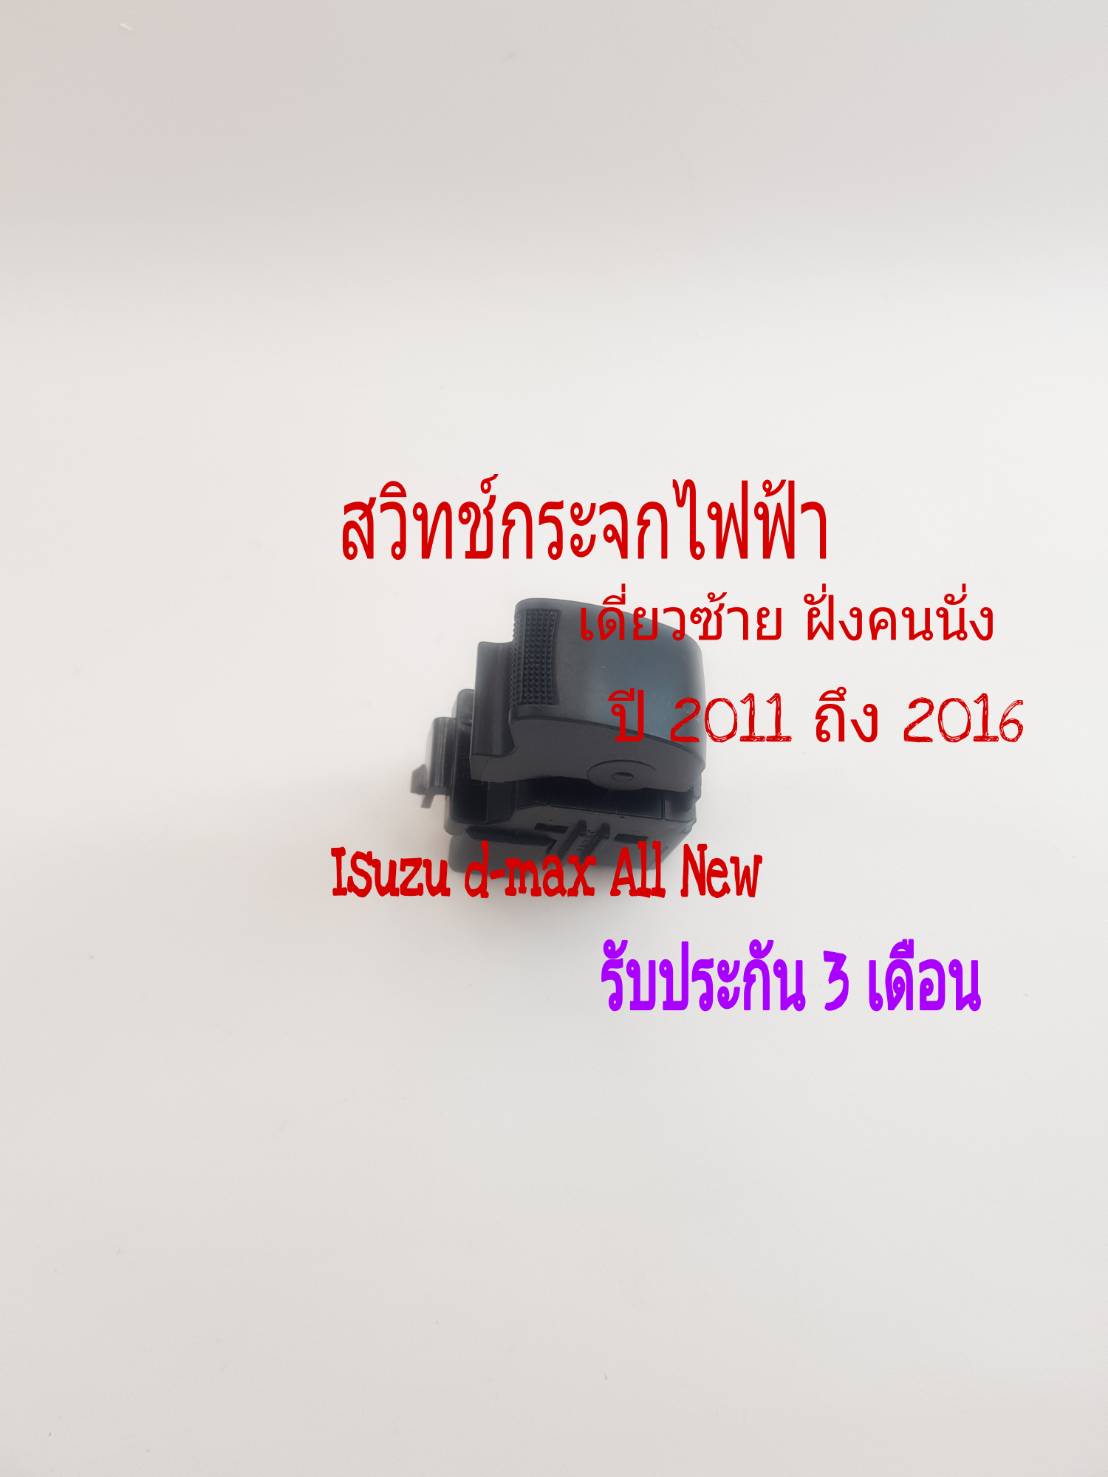 สวิทช์กระจกไฟฟ้า Isuzu D Max All New ฝั่งคนนั่ง เดี่ยวซ้าย ปี 2011 ถึง 2016